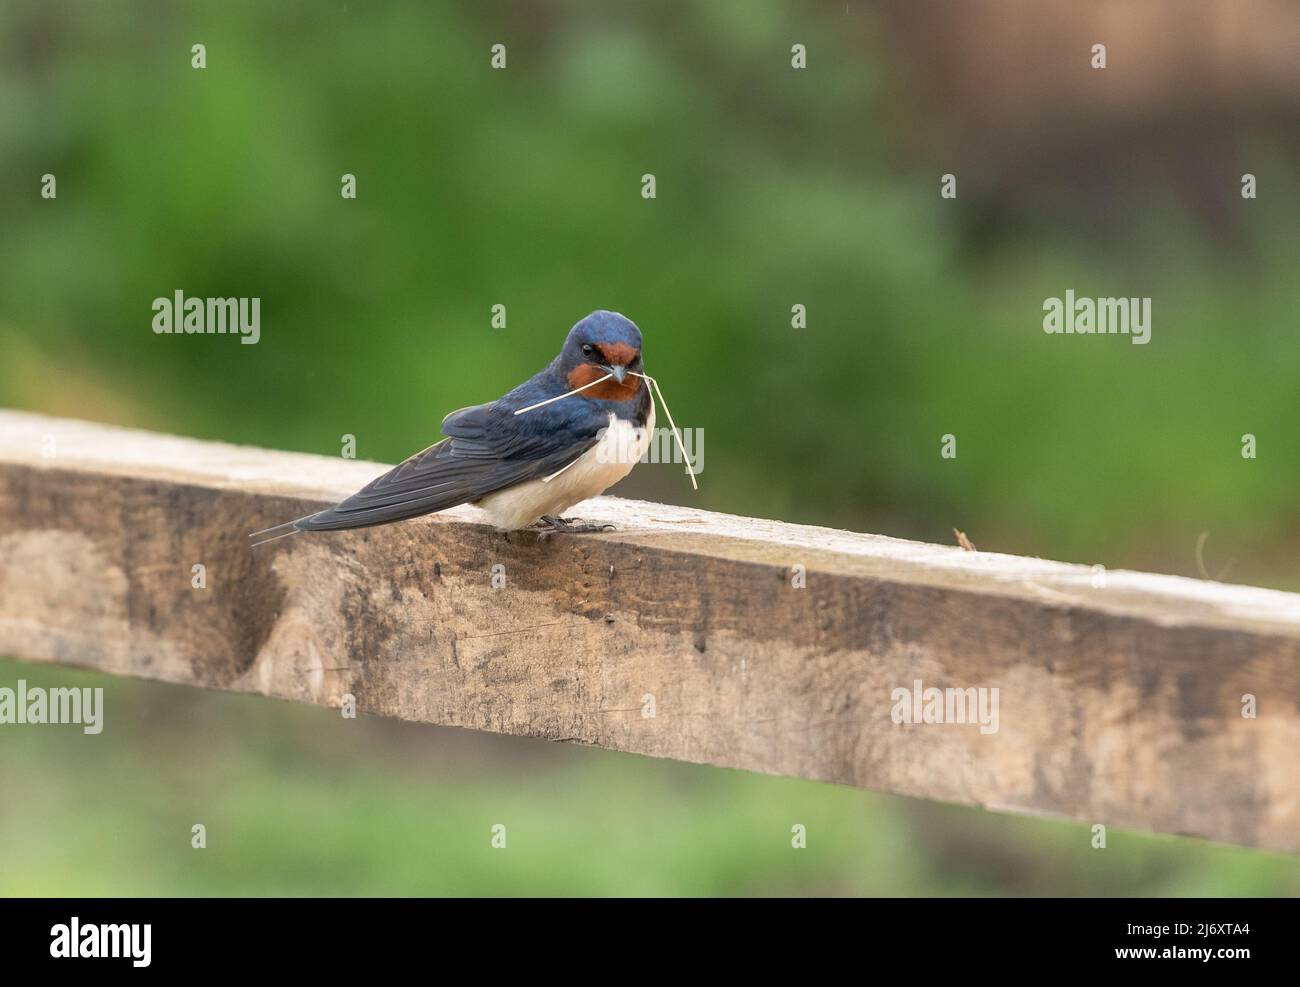 Un fienile inghiottito (UK) su una recinzione di legno che tiene il materiale nidificante in esso è becco. L'immagine presenta uno spazio negativo intorno all'uccello. Foto Stock